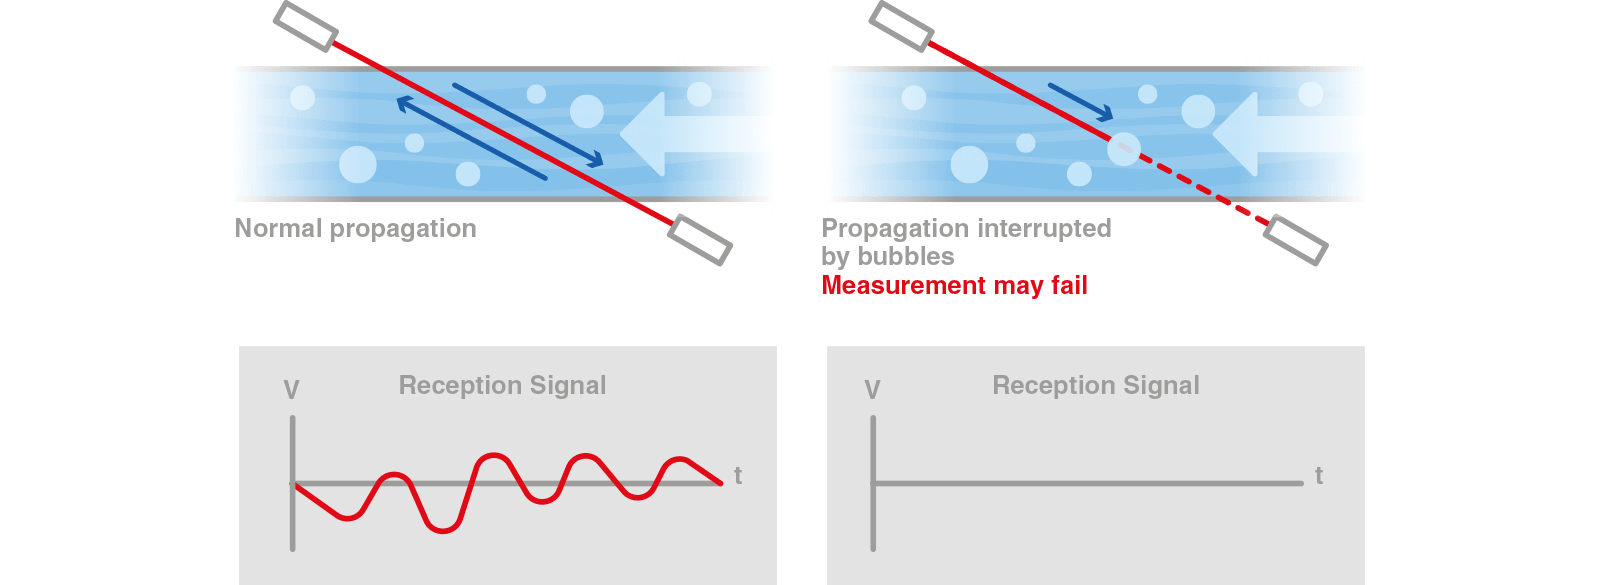 diagramma della tecnologia di elaborazione digitale del segnale avanzata